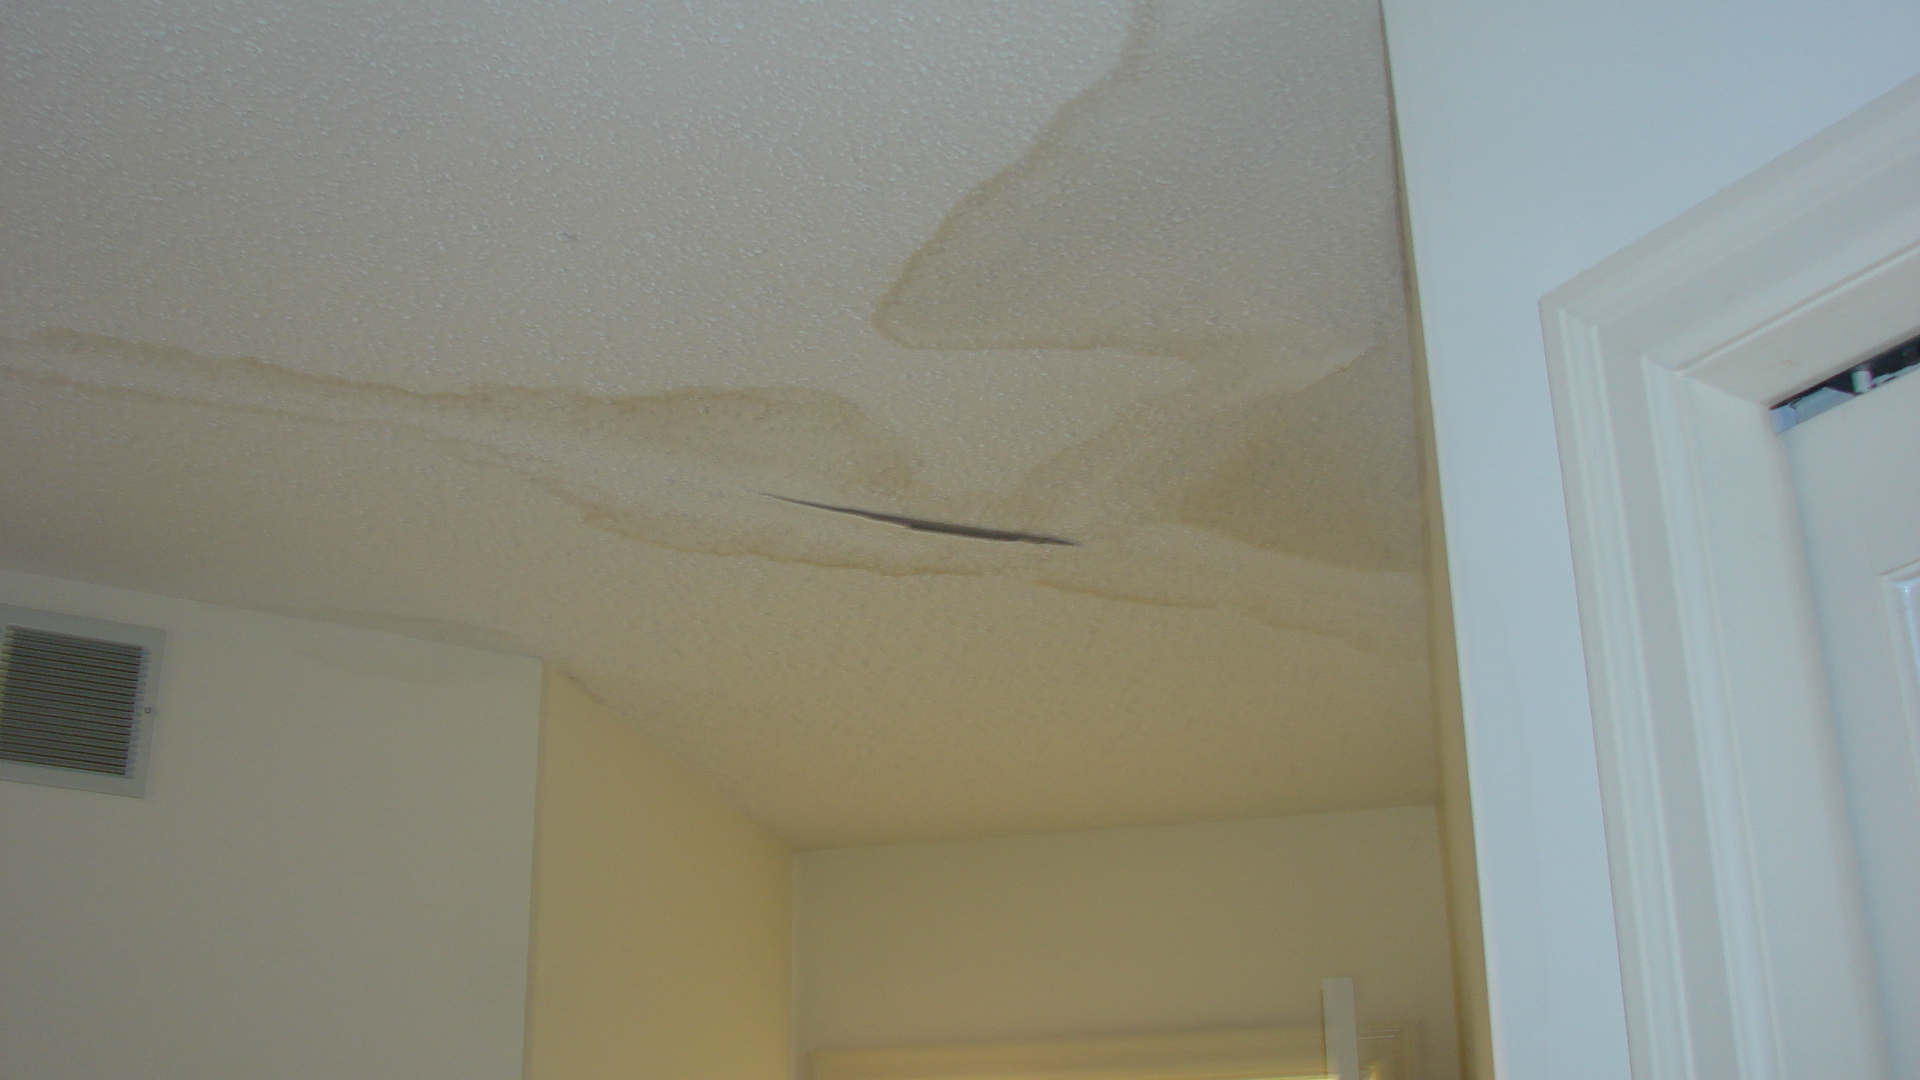 Ceiling Repair Sagging Drywall Ceiling Repair